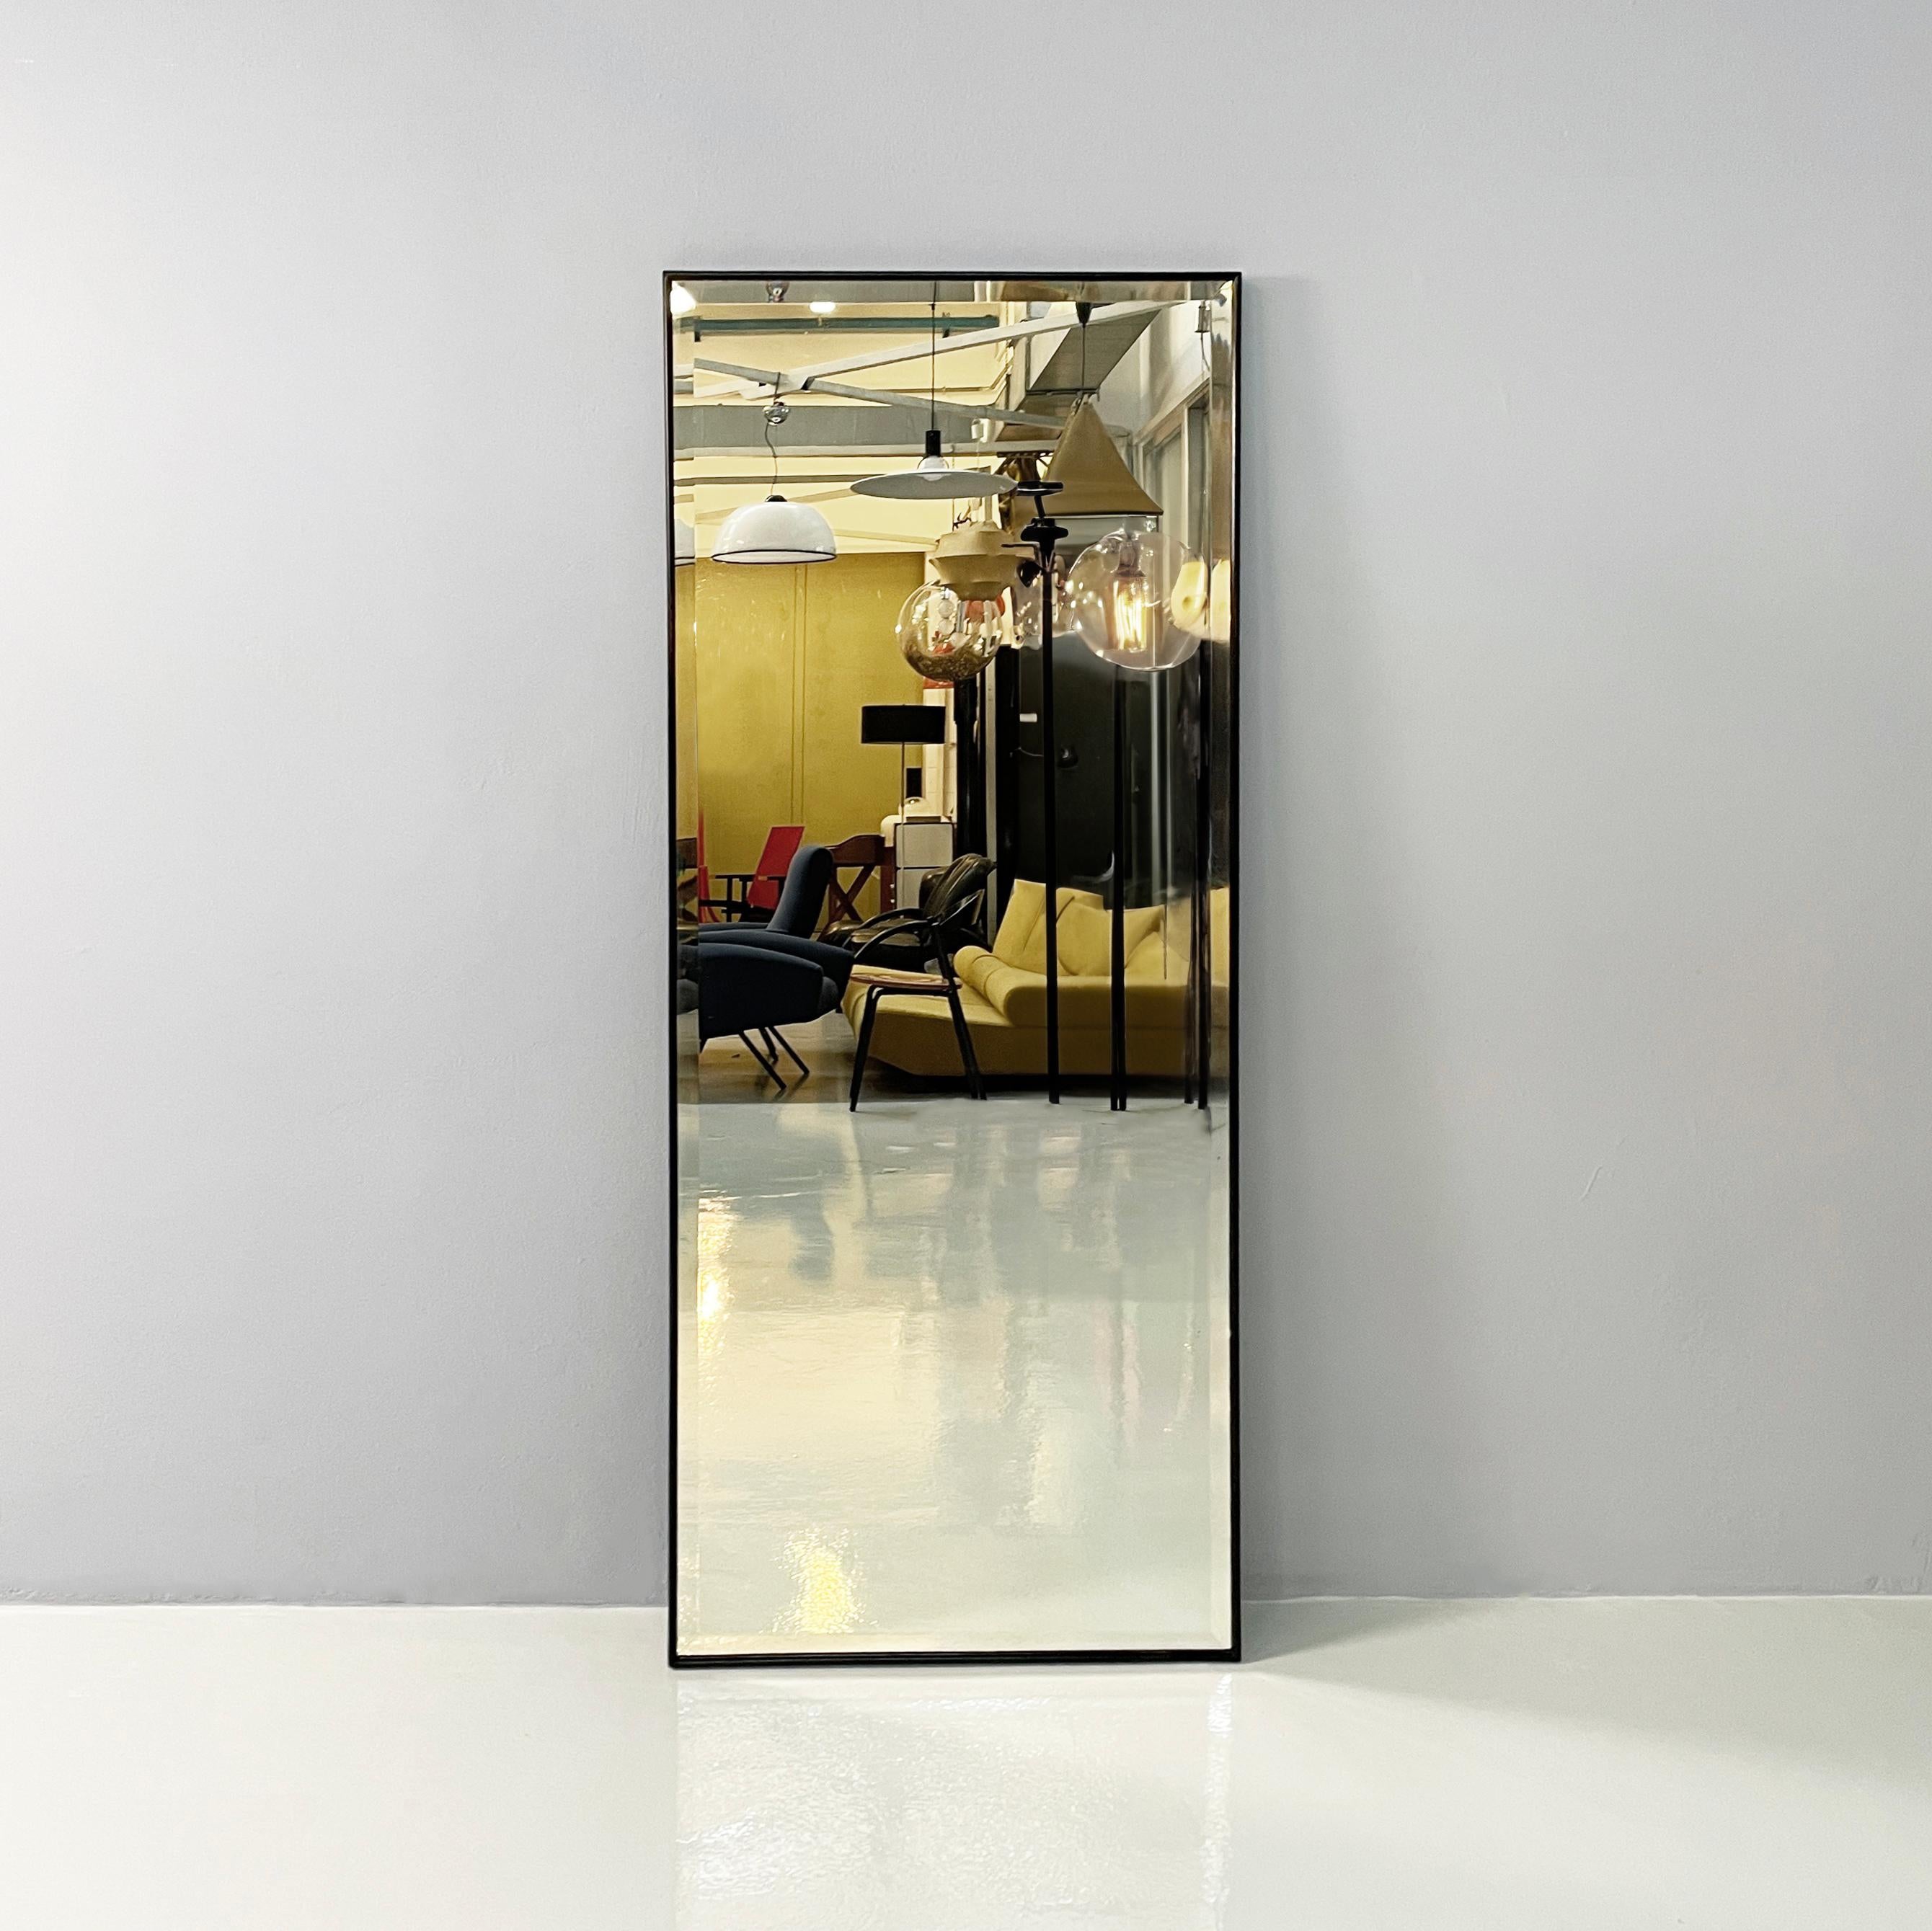 Miroir rectangulaire moderne italien avec cadre en bois noir, années 1990
Miroir mural rectangulaire avec un cadre au profil arrondi en bois peint en noir. La structure est entièrement en bois massif. La particularité de ce miroir est qu'il peut